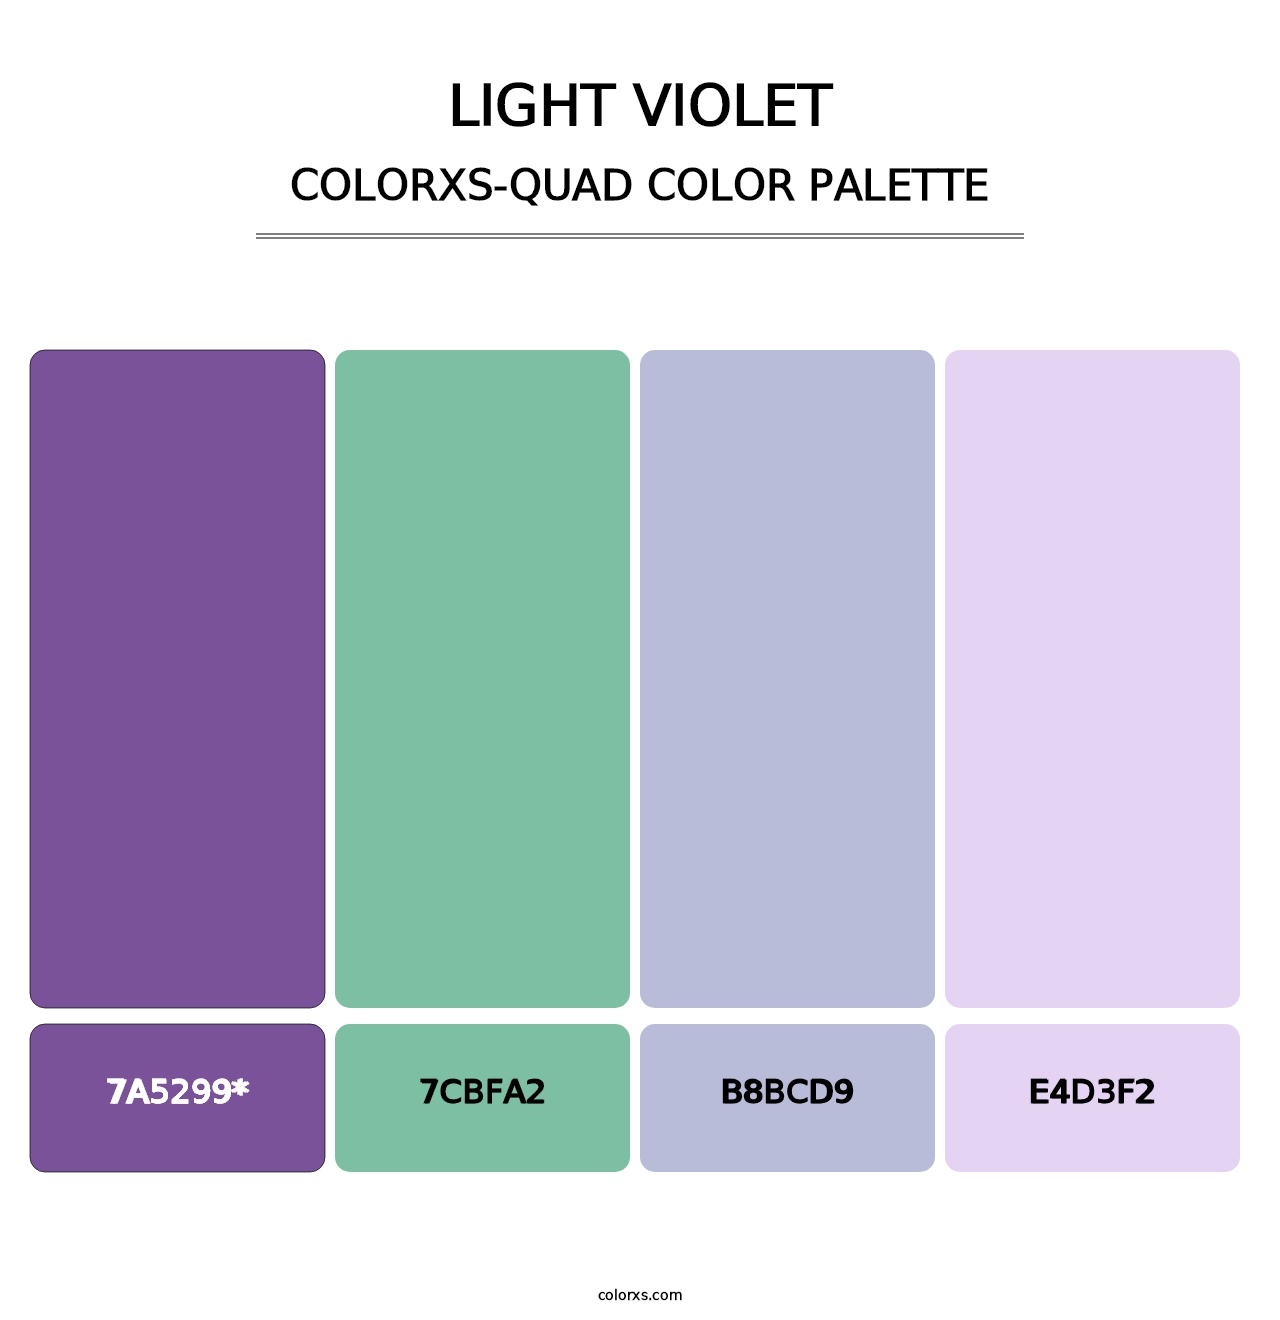 Light Violet - Colorxs Quad Palette